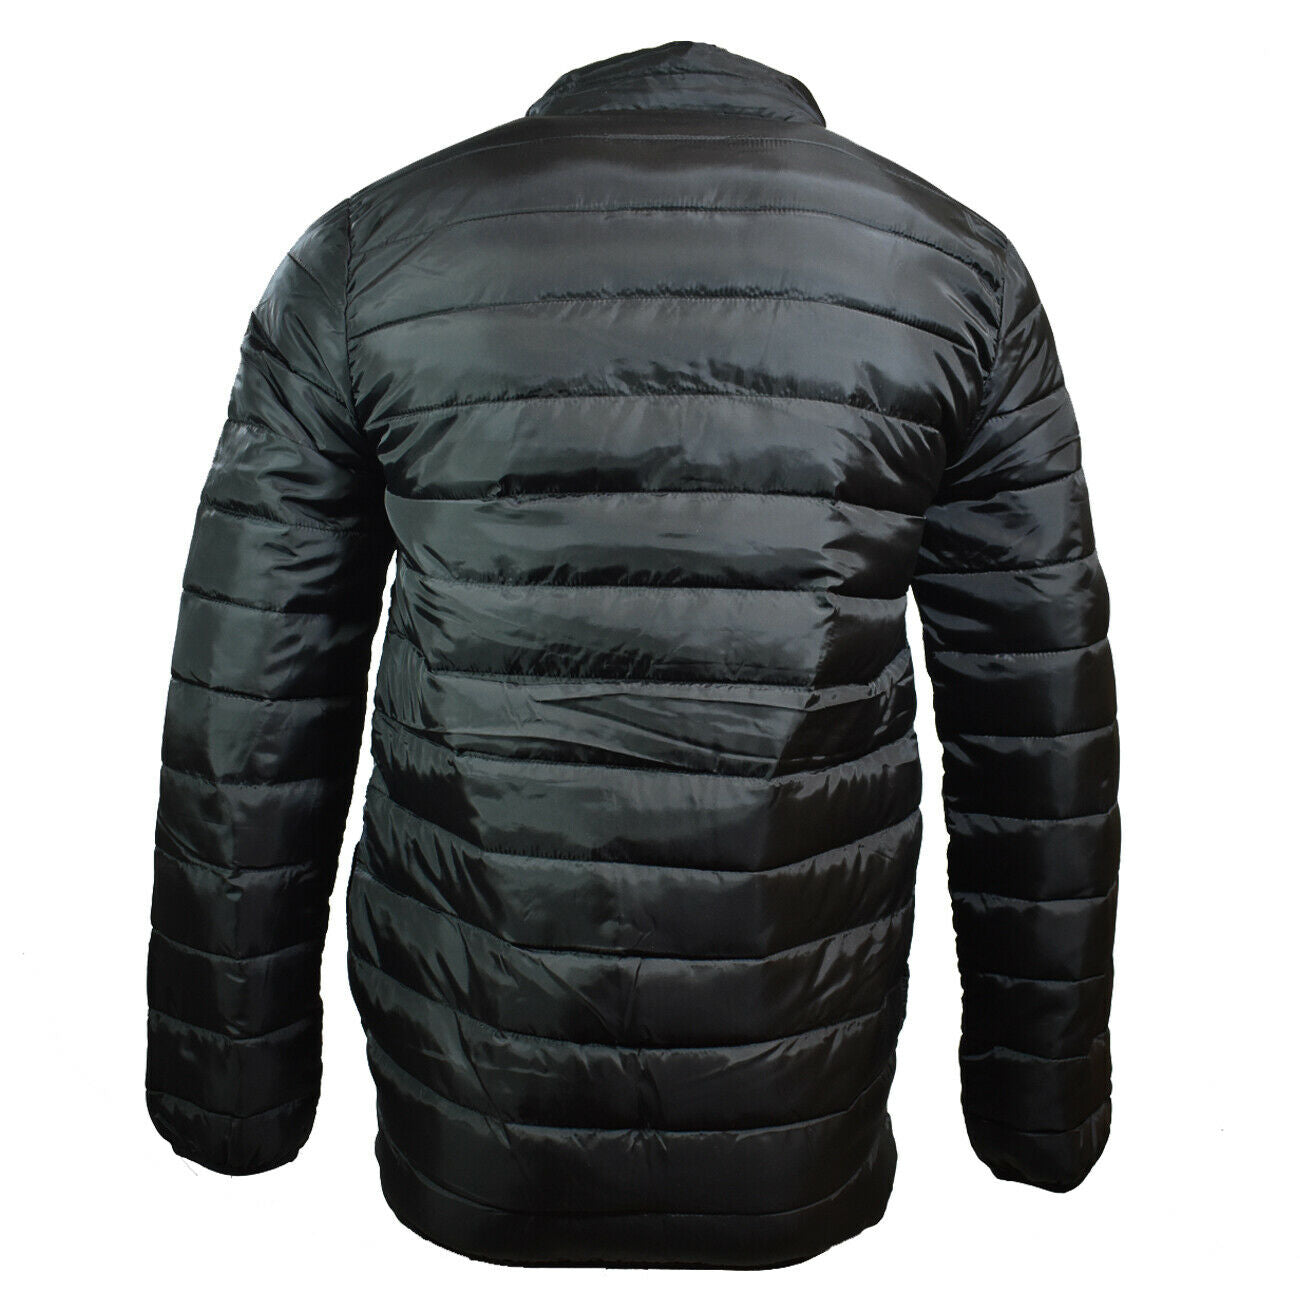 Marino Bay Men's Puffer Jacket - Black